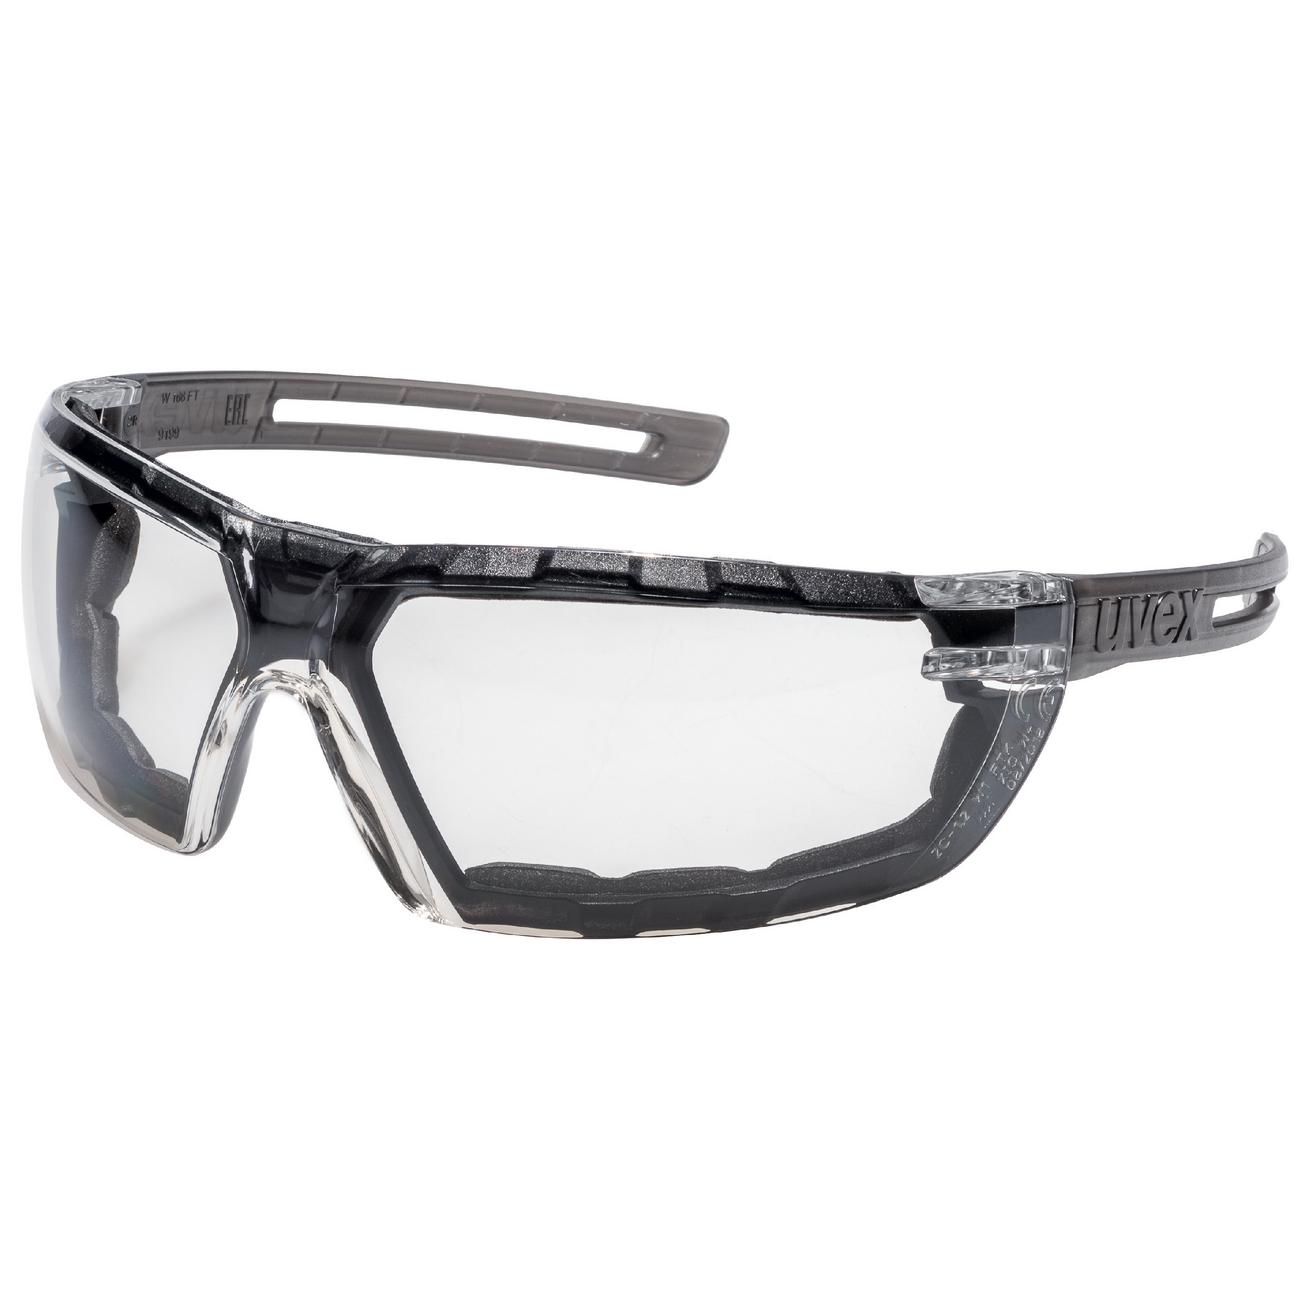 Brýle uvex x-fit Kód produktu: 9199180, Provedení zorníku: guard, PC čirý; 2C-1,2, SV. excellence